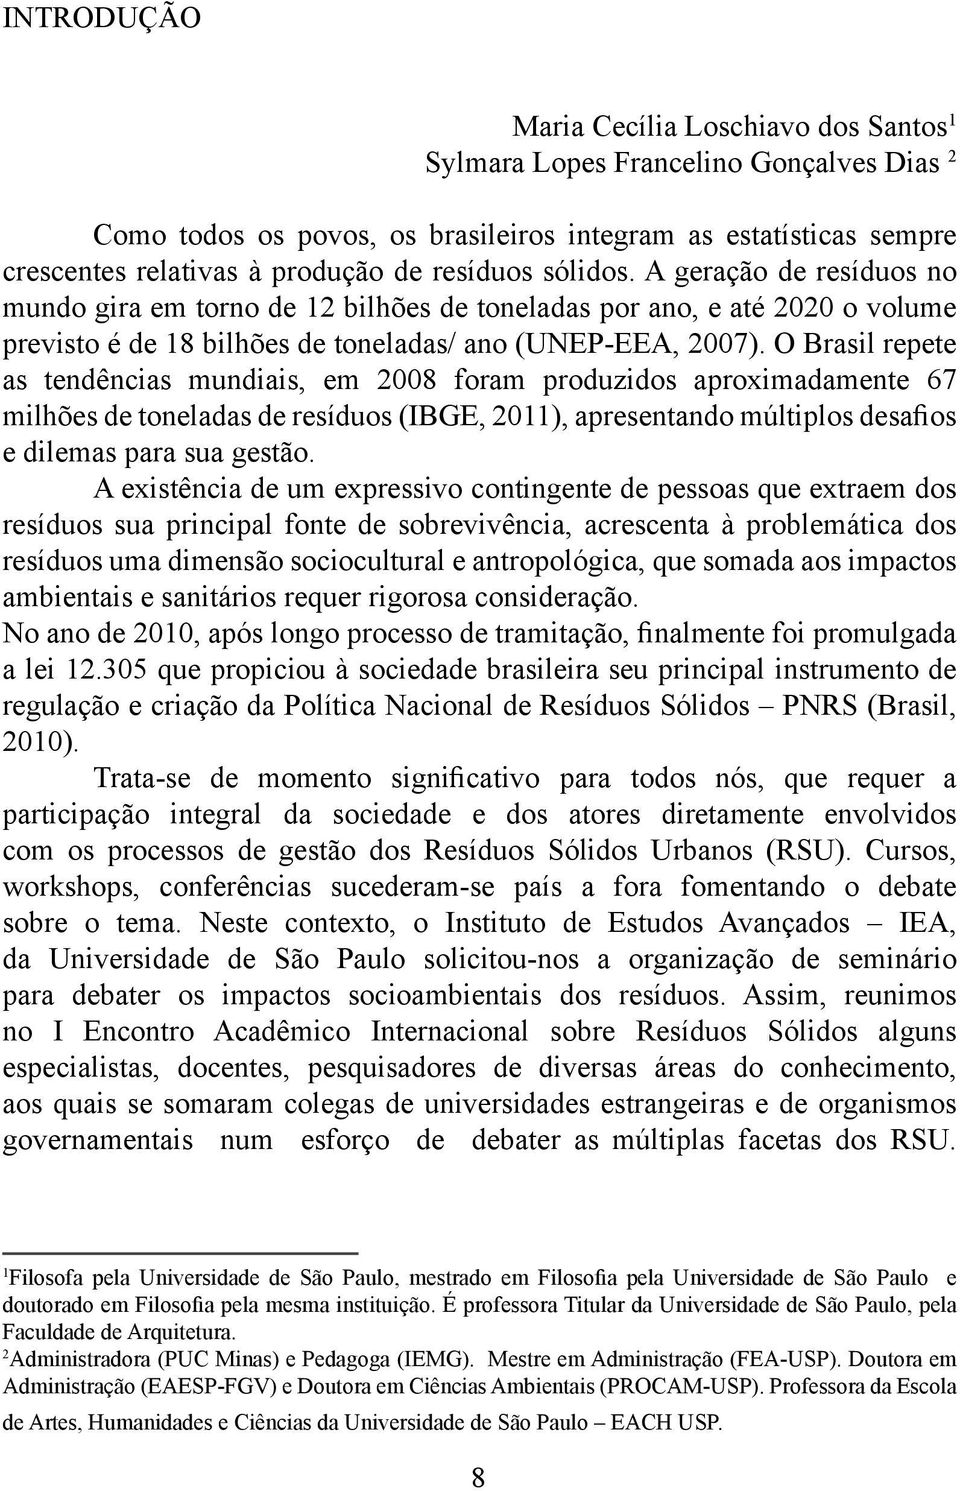 O Brasil repete as tendências mundiais, em 2008 foram produzidos aproximadamente 67 milhões de toneladas de resíduos (IBGE, 2011), apresentando múltiplos desaos e dilemas para sua gestão.